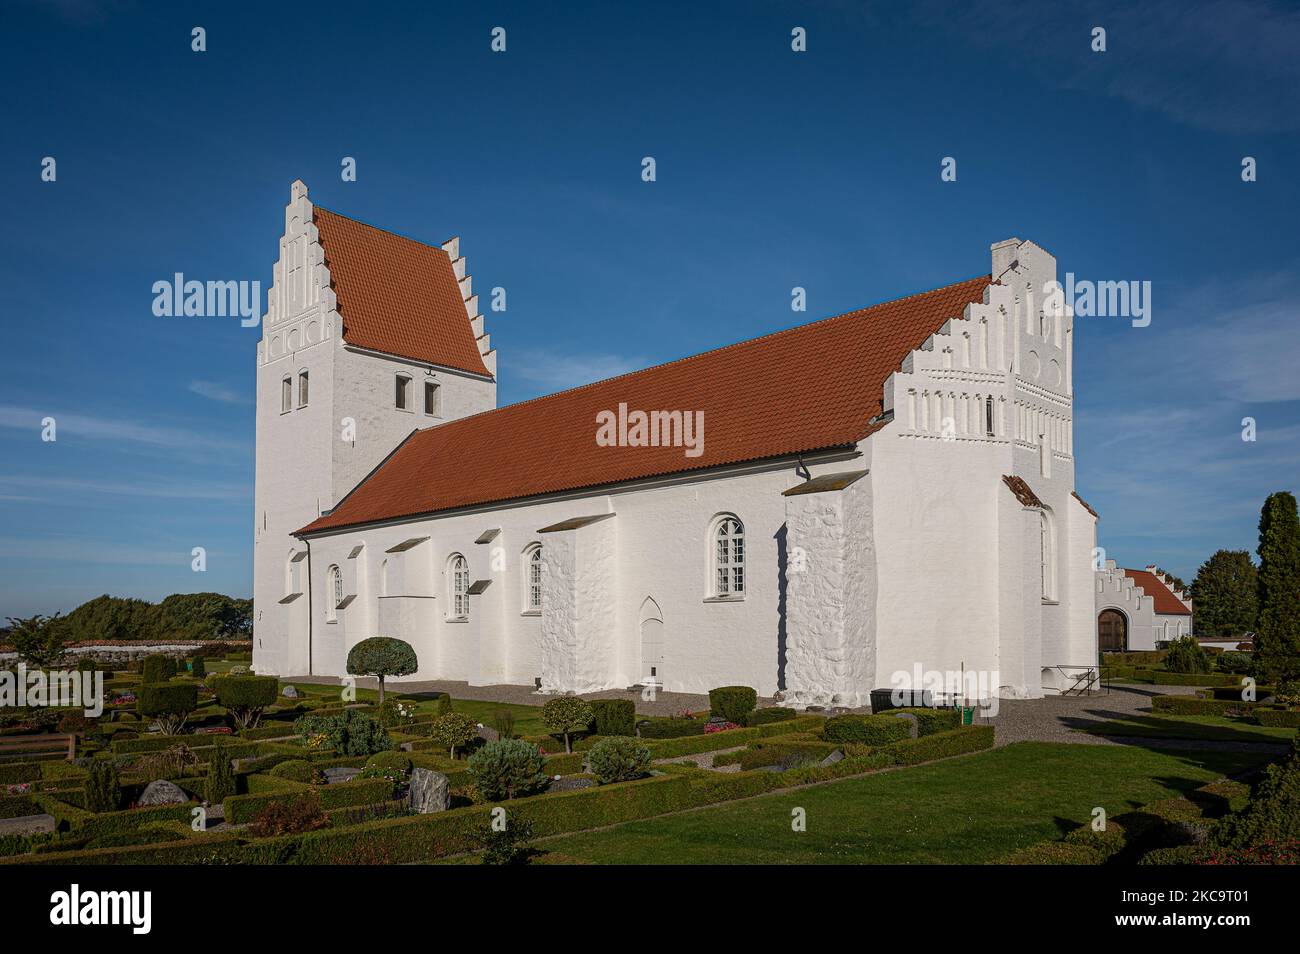 Fanefjord chiesa decorata con dipinti a base di calce del maestro Elmelunde intorno al 1500, Fanefjord chiesa, Danimarca, 10 ottobre 2022 Foto Stock